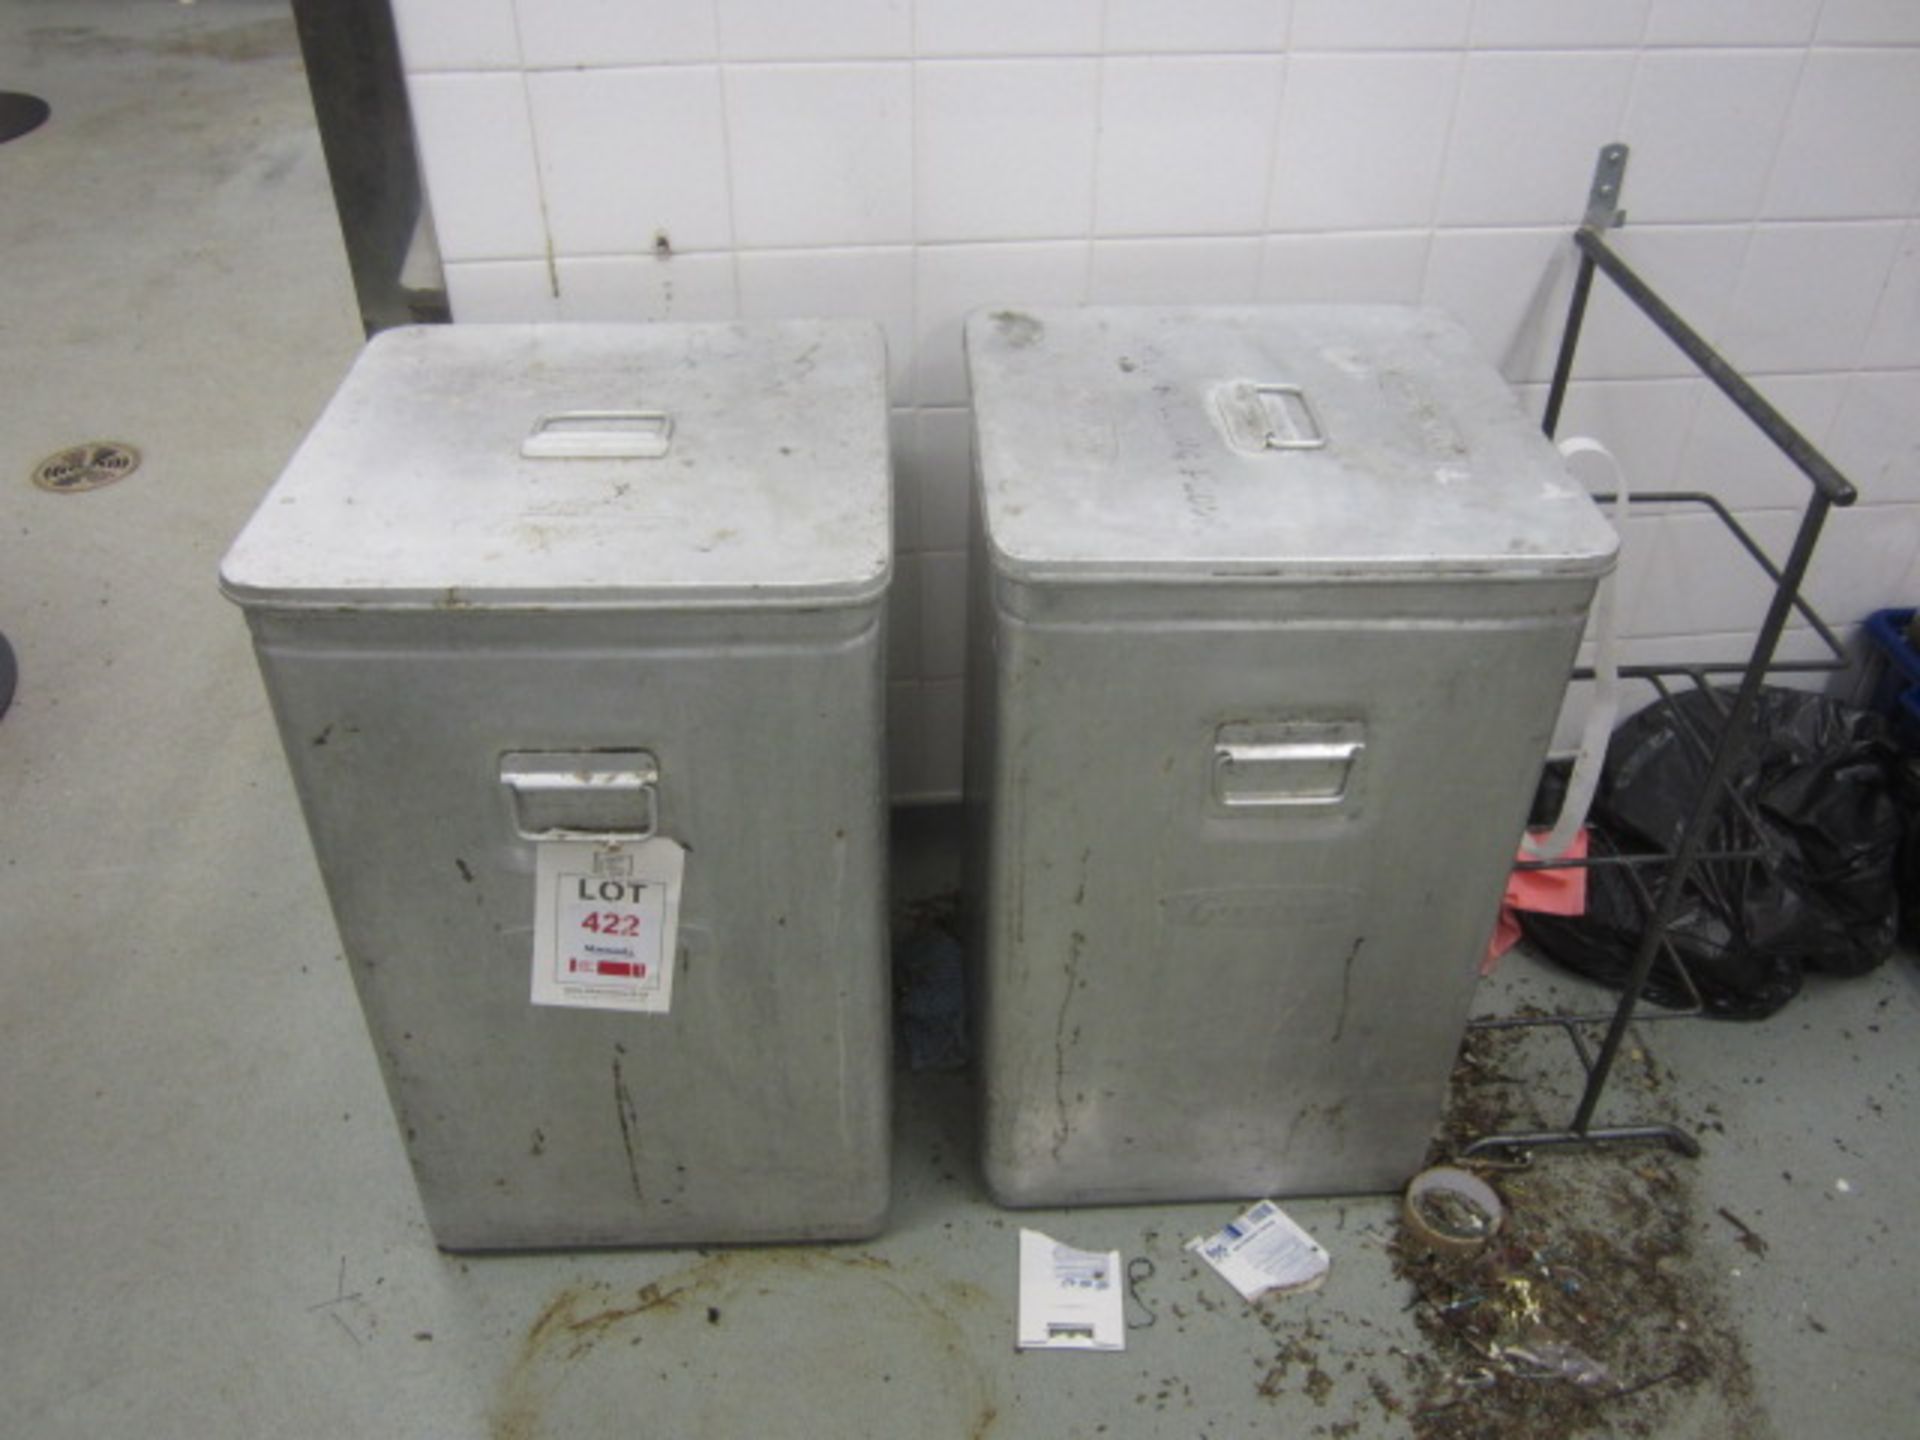 Two Grundy bin storage bins